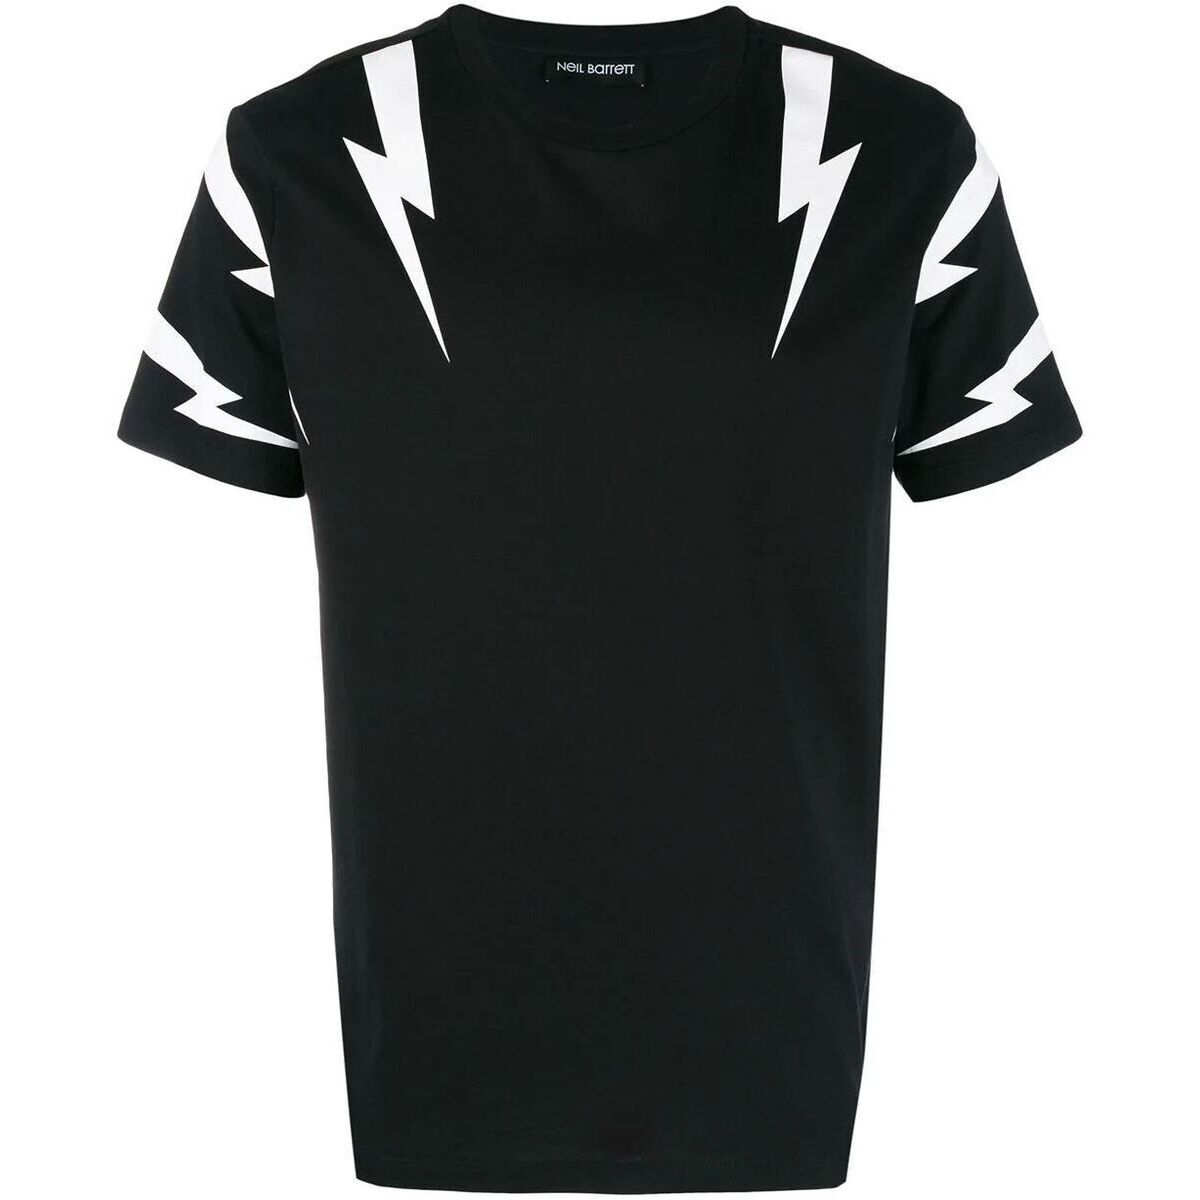 NEIL BARRETT ニール バレット BLACK Tシャツ メンズ PBJT553SM508S524 mc とっておきし新春福袋